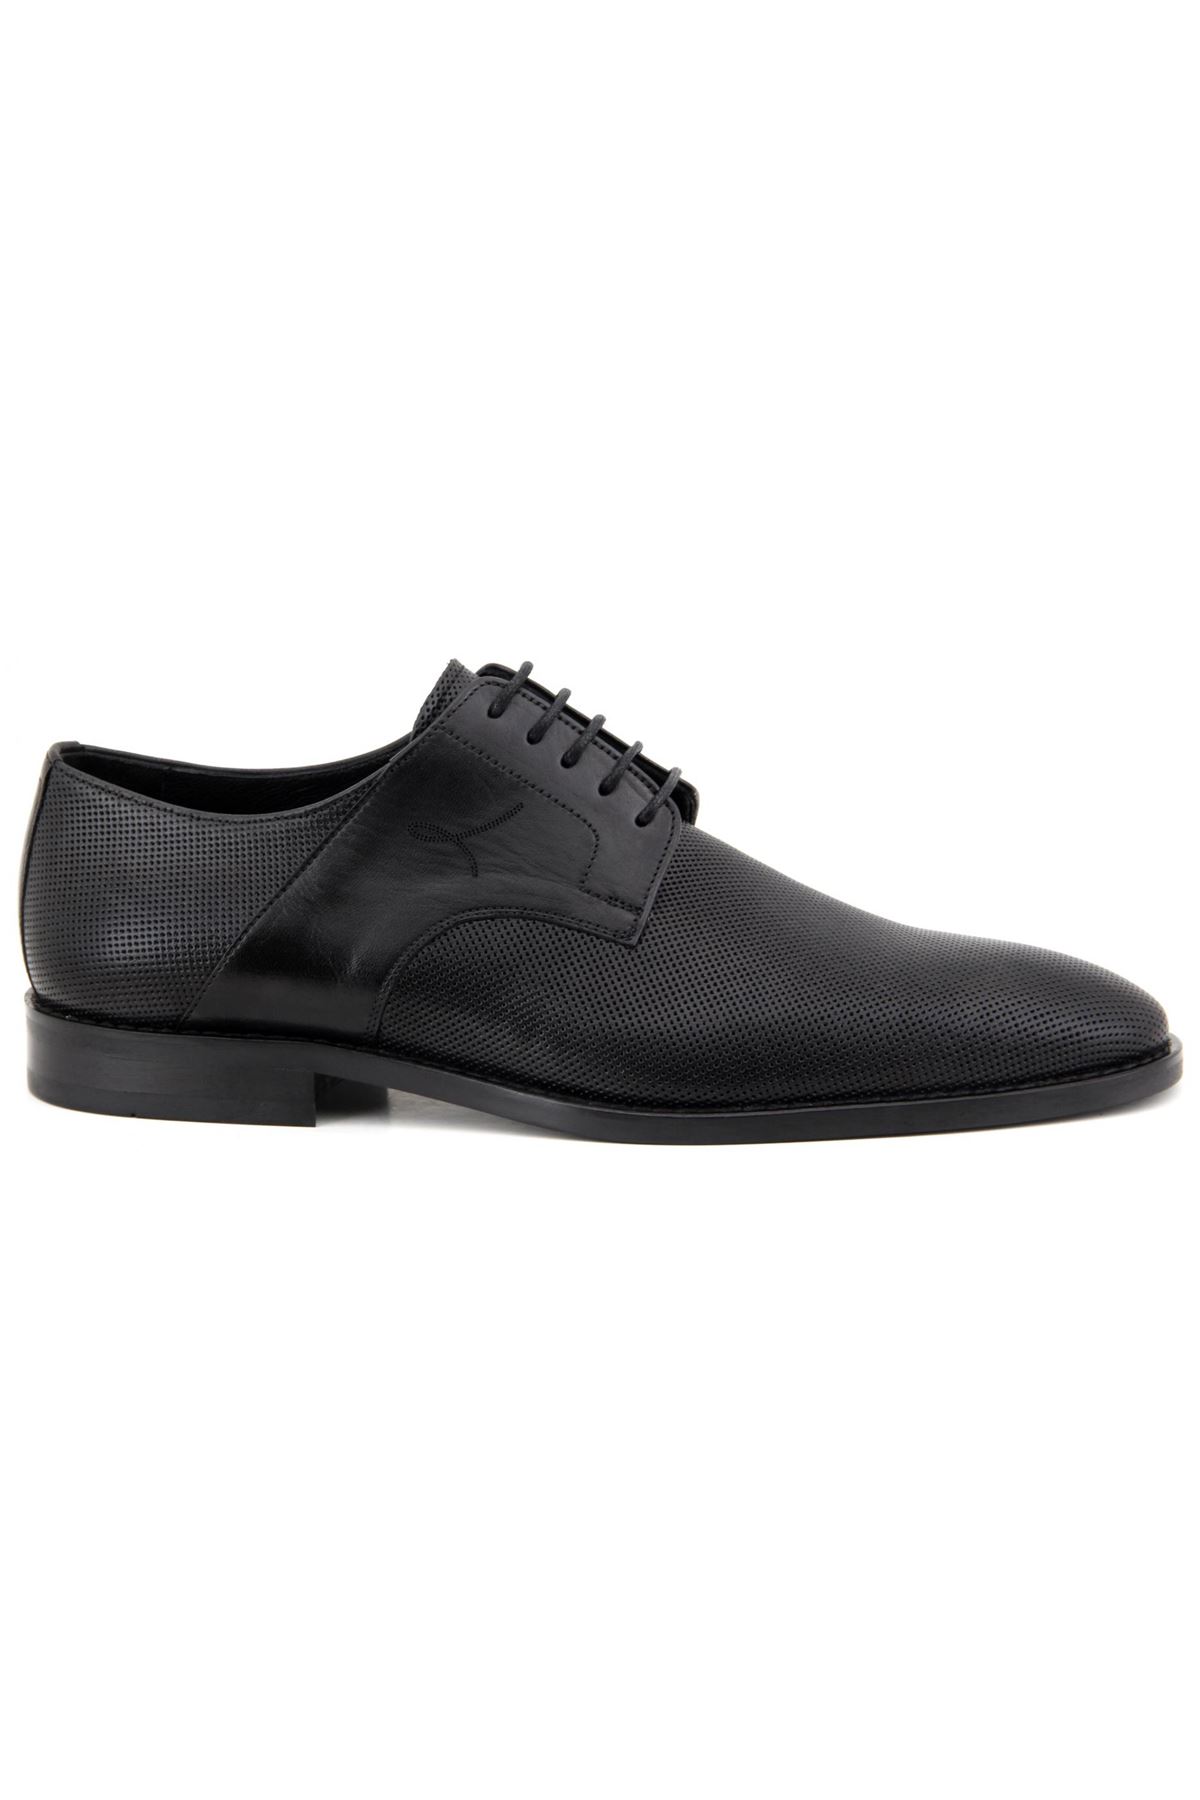 2887 Libero Klasik Erkek Ayakkabı - Siyah